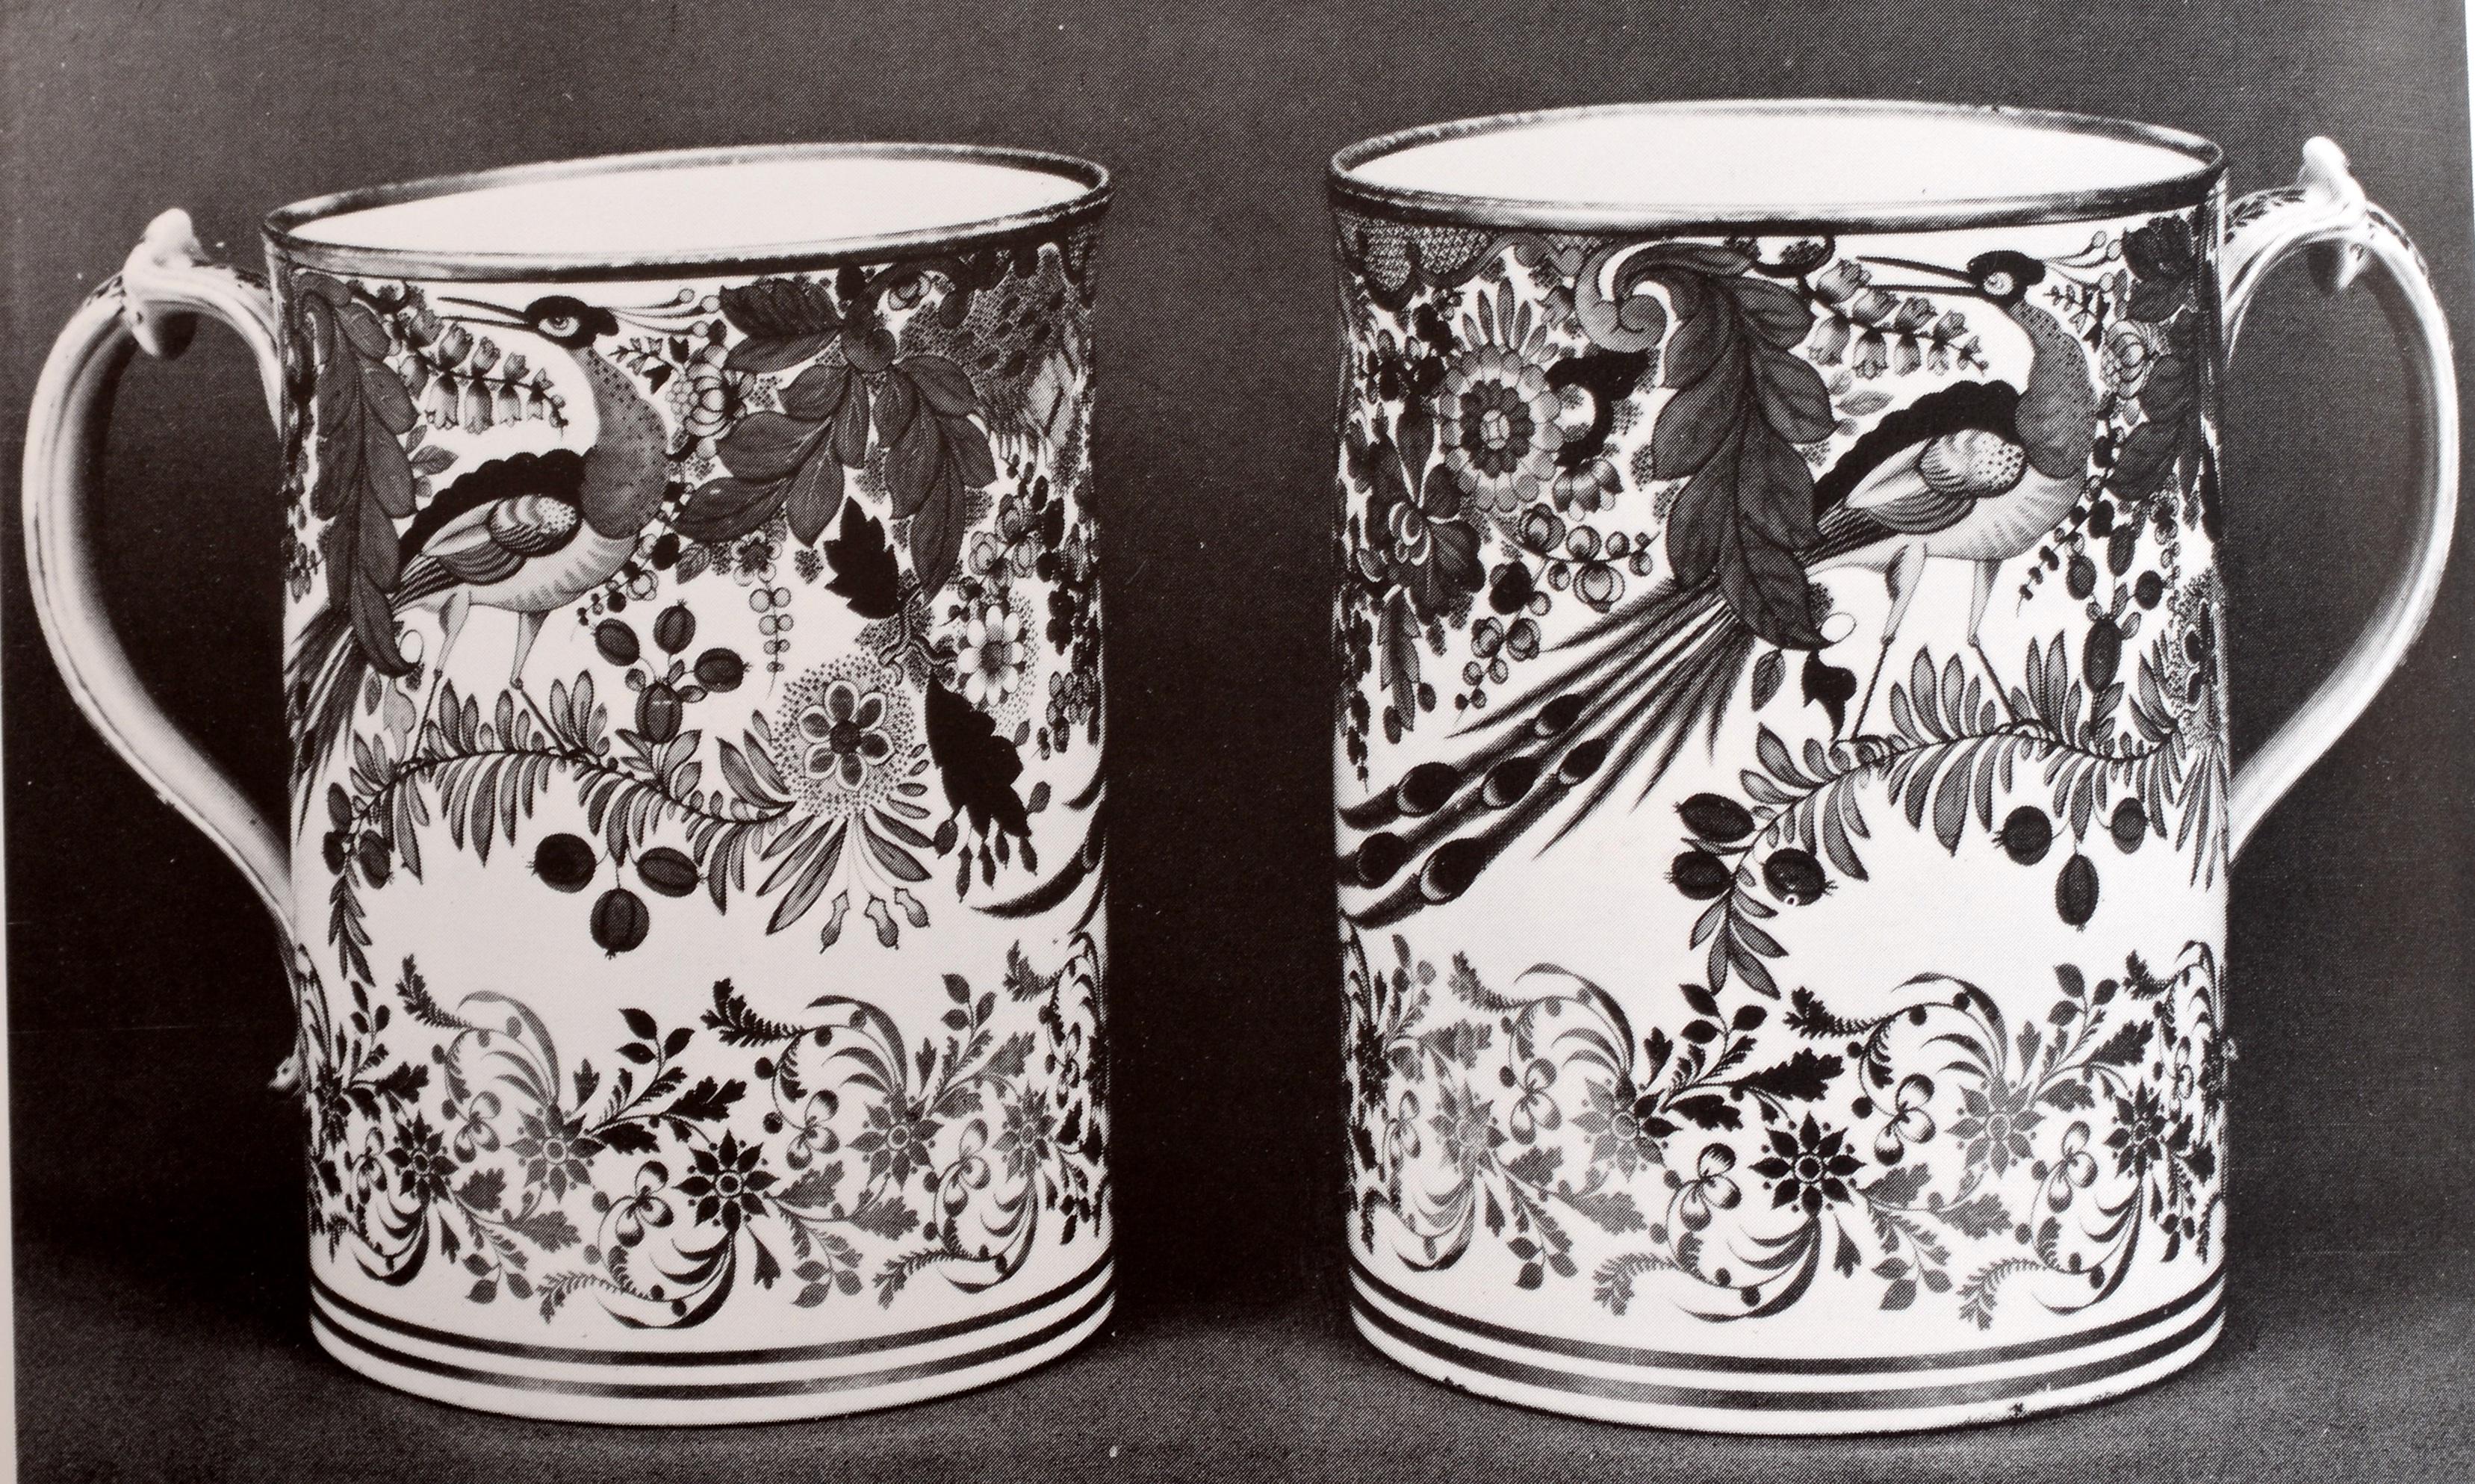 Paper Flight and Barr Worcester Porcelain 1783-1840 by Henry Sandon For Sale